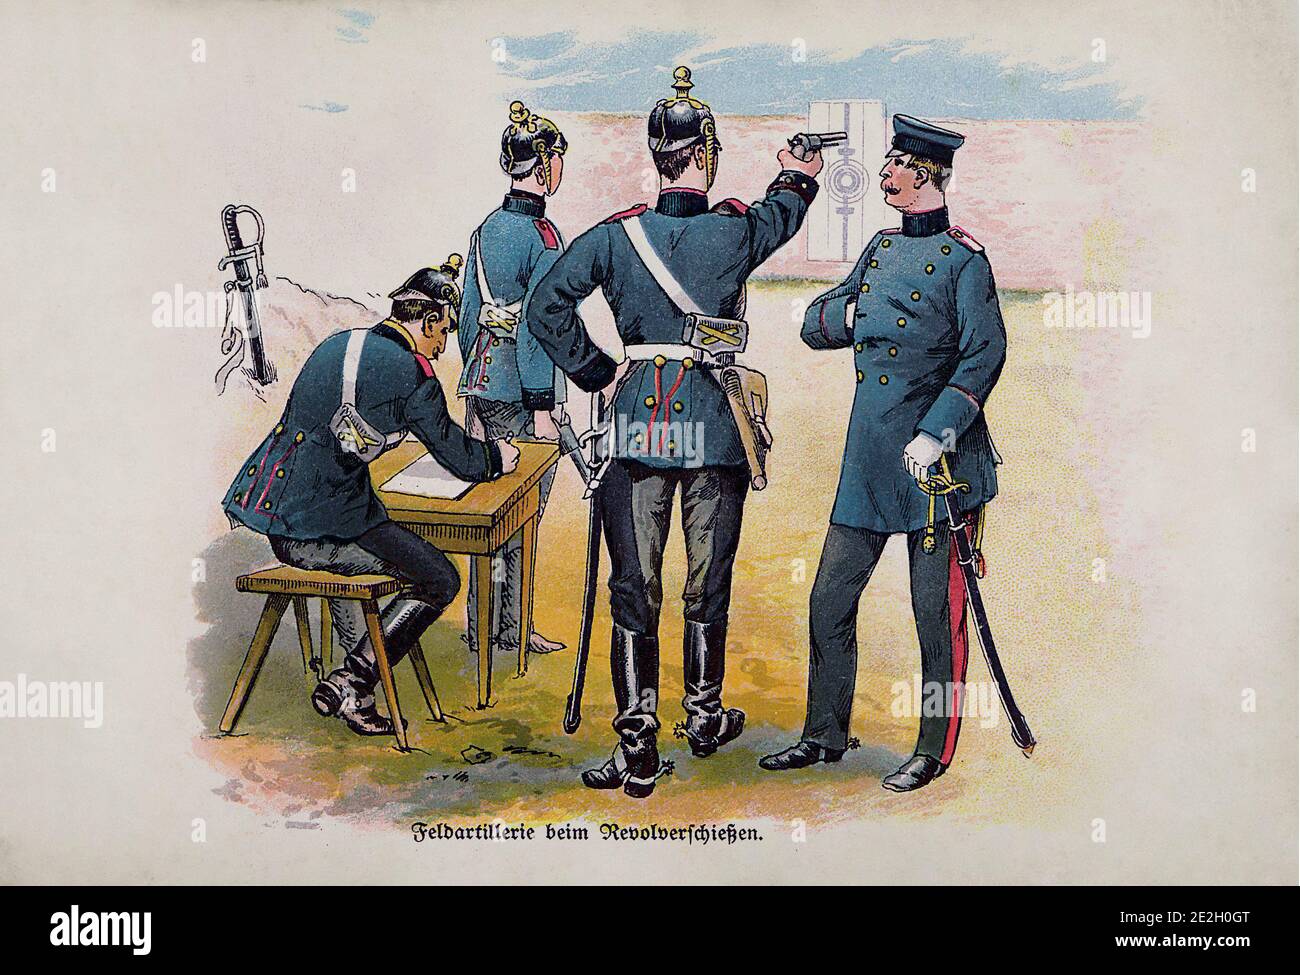 Armée allemande impériale (Deutsches Heer). Officiers de l'artillerie de campagne en tirant à partir d'un revolver. Empire allemand. 1910s Banque D'Images